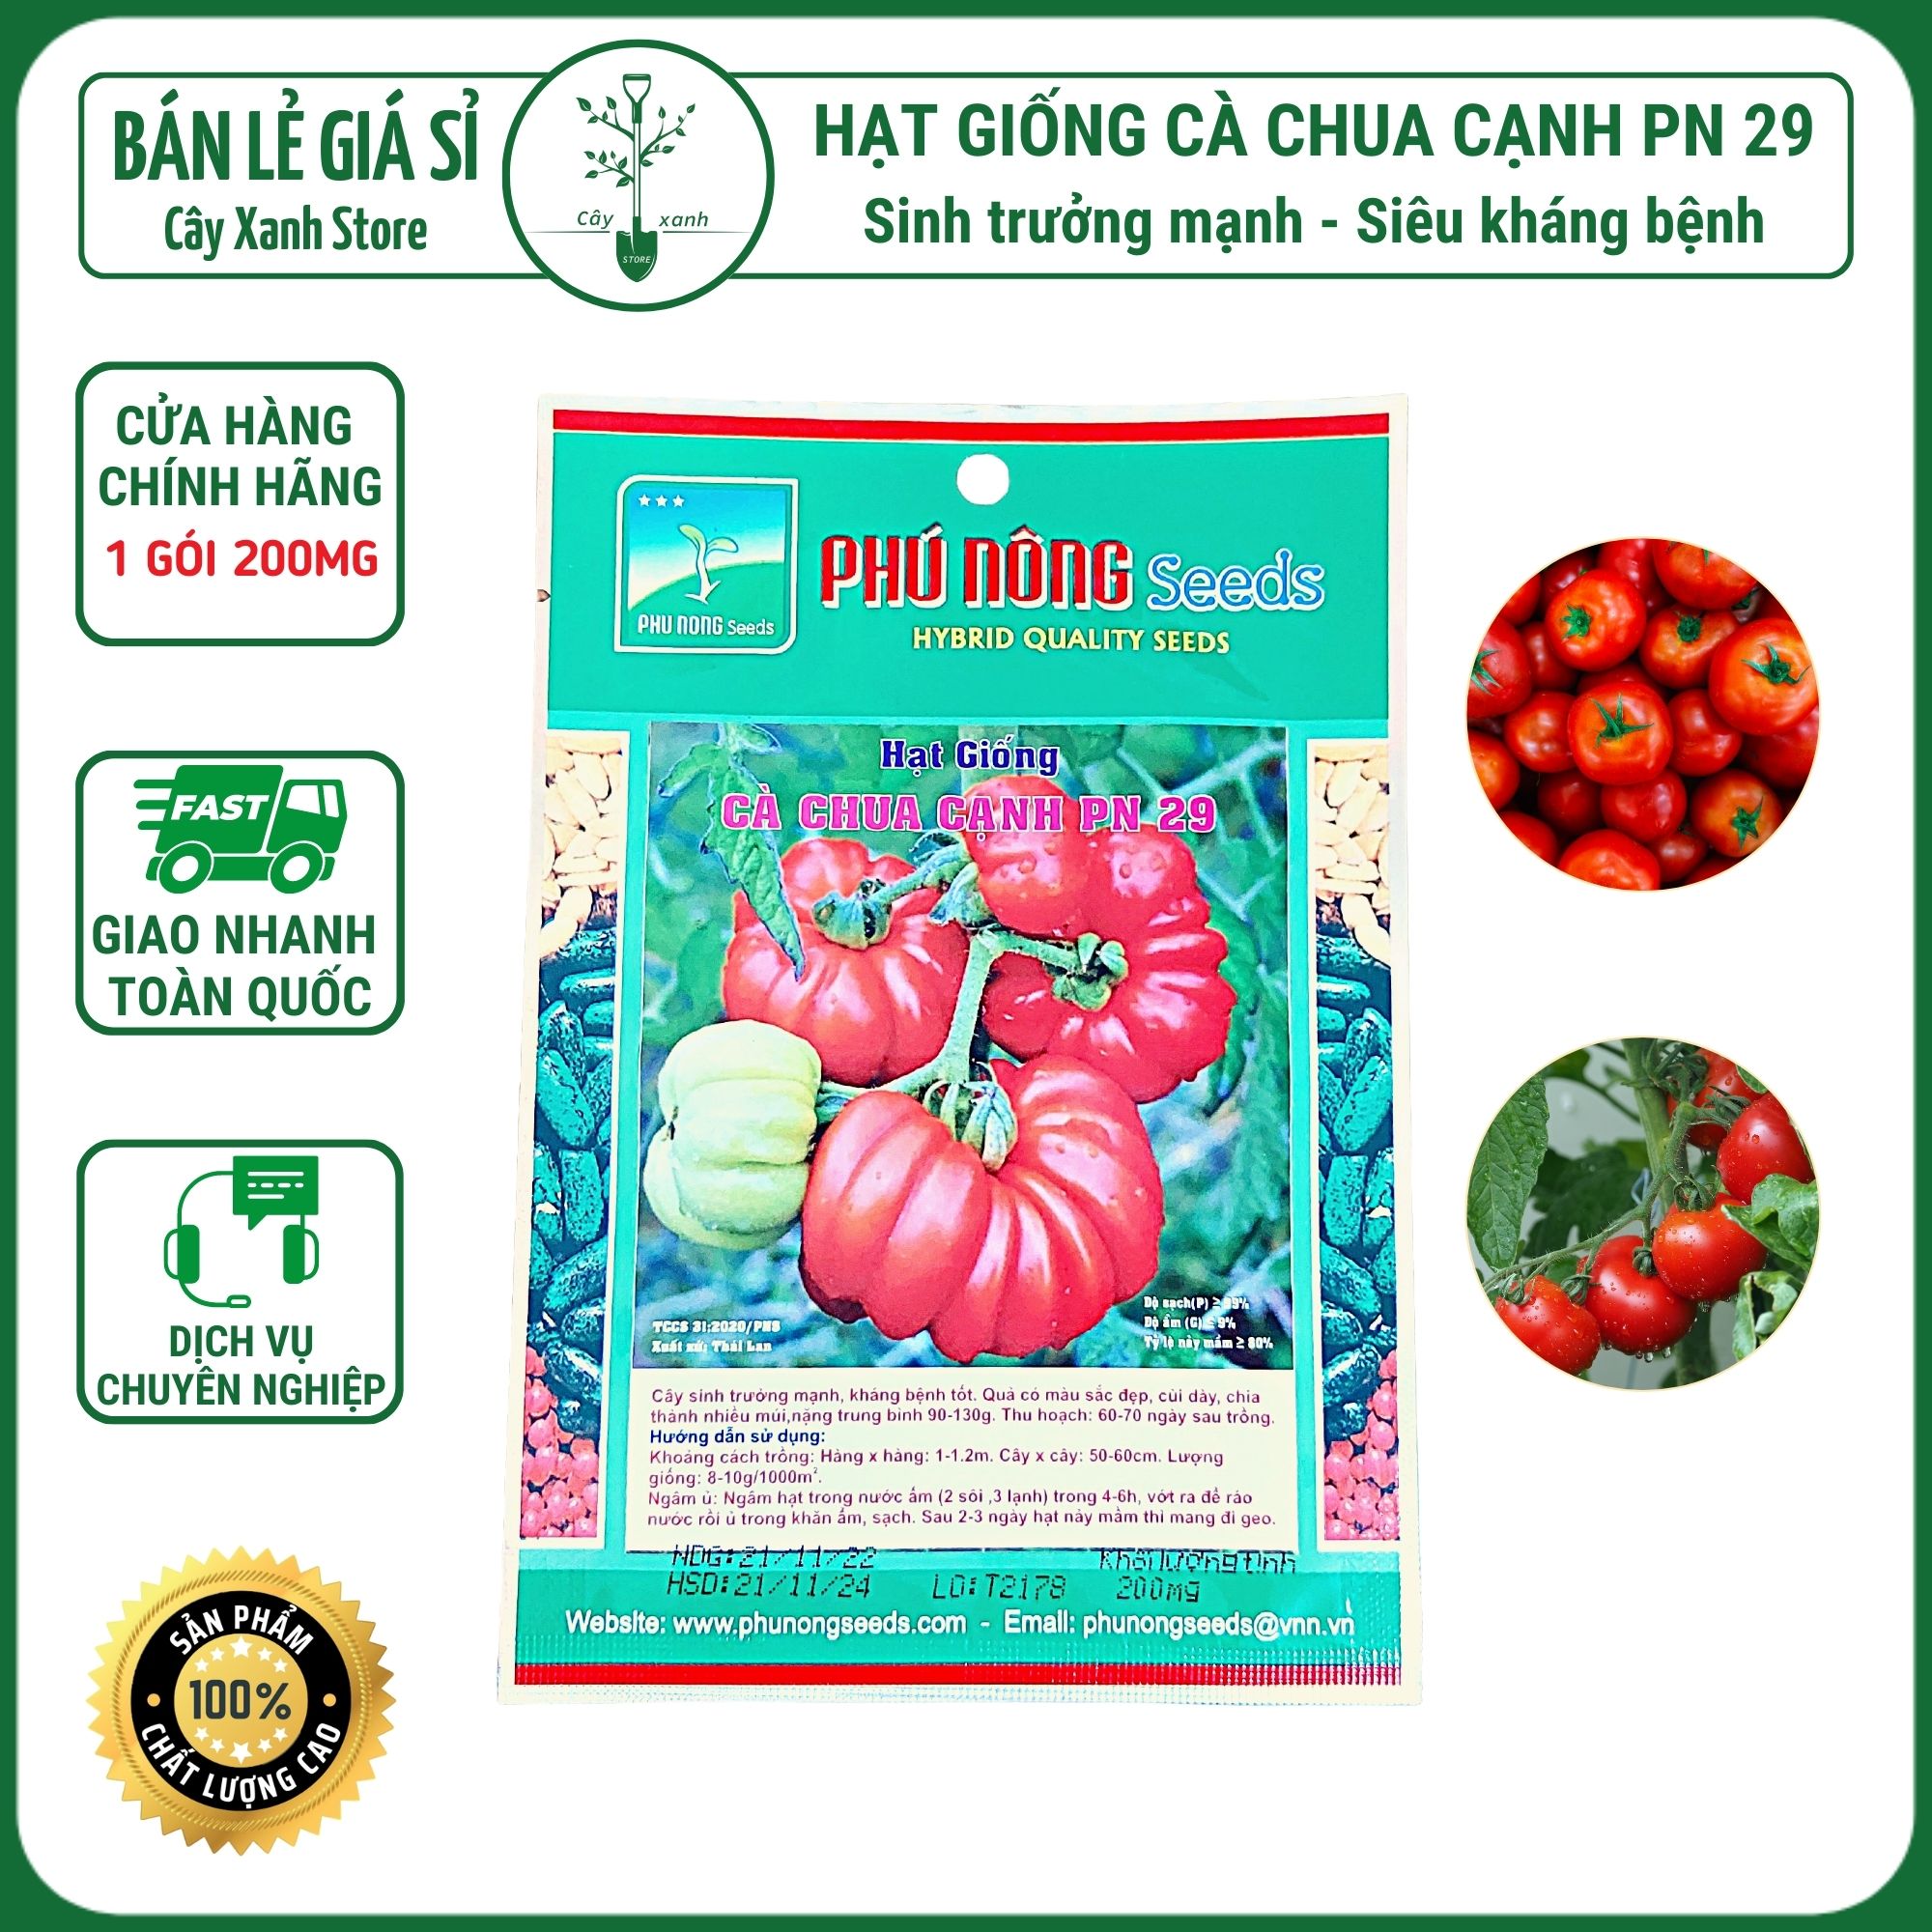 Hạt giống cà chua cạnh PN 29 gói 200mg Phú Nông Seeds sinh tưởng mạnh siêu kháng bệnh - Cây Xanh Store